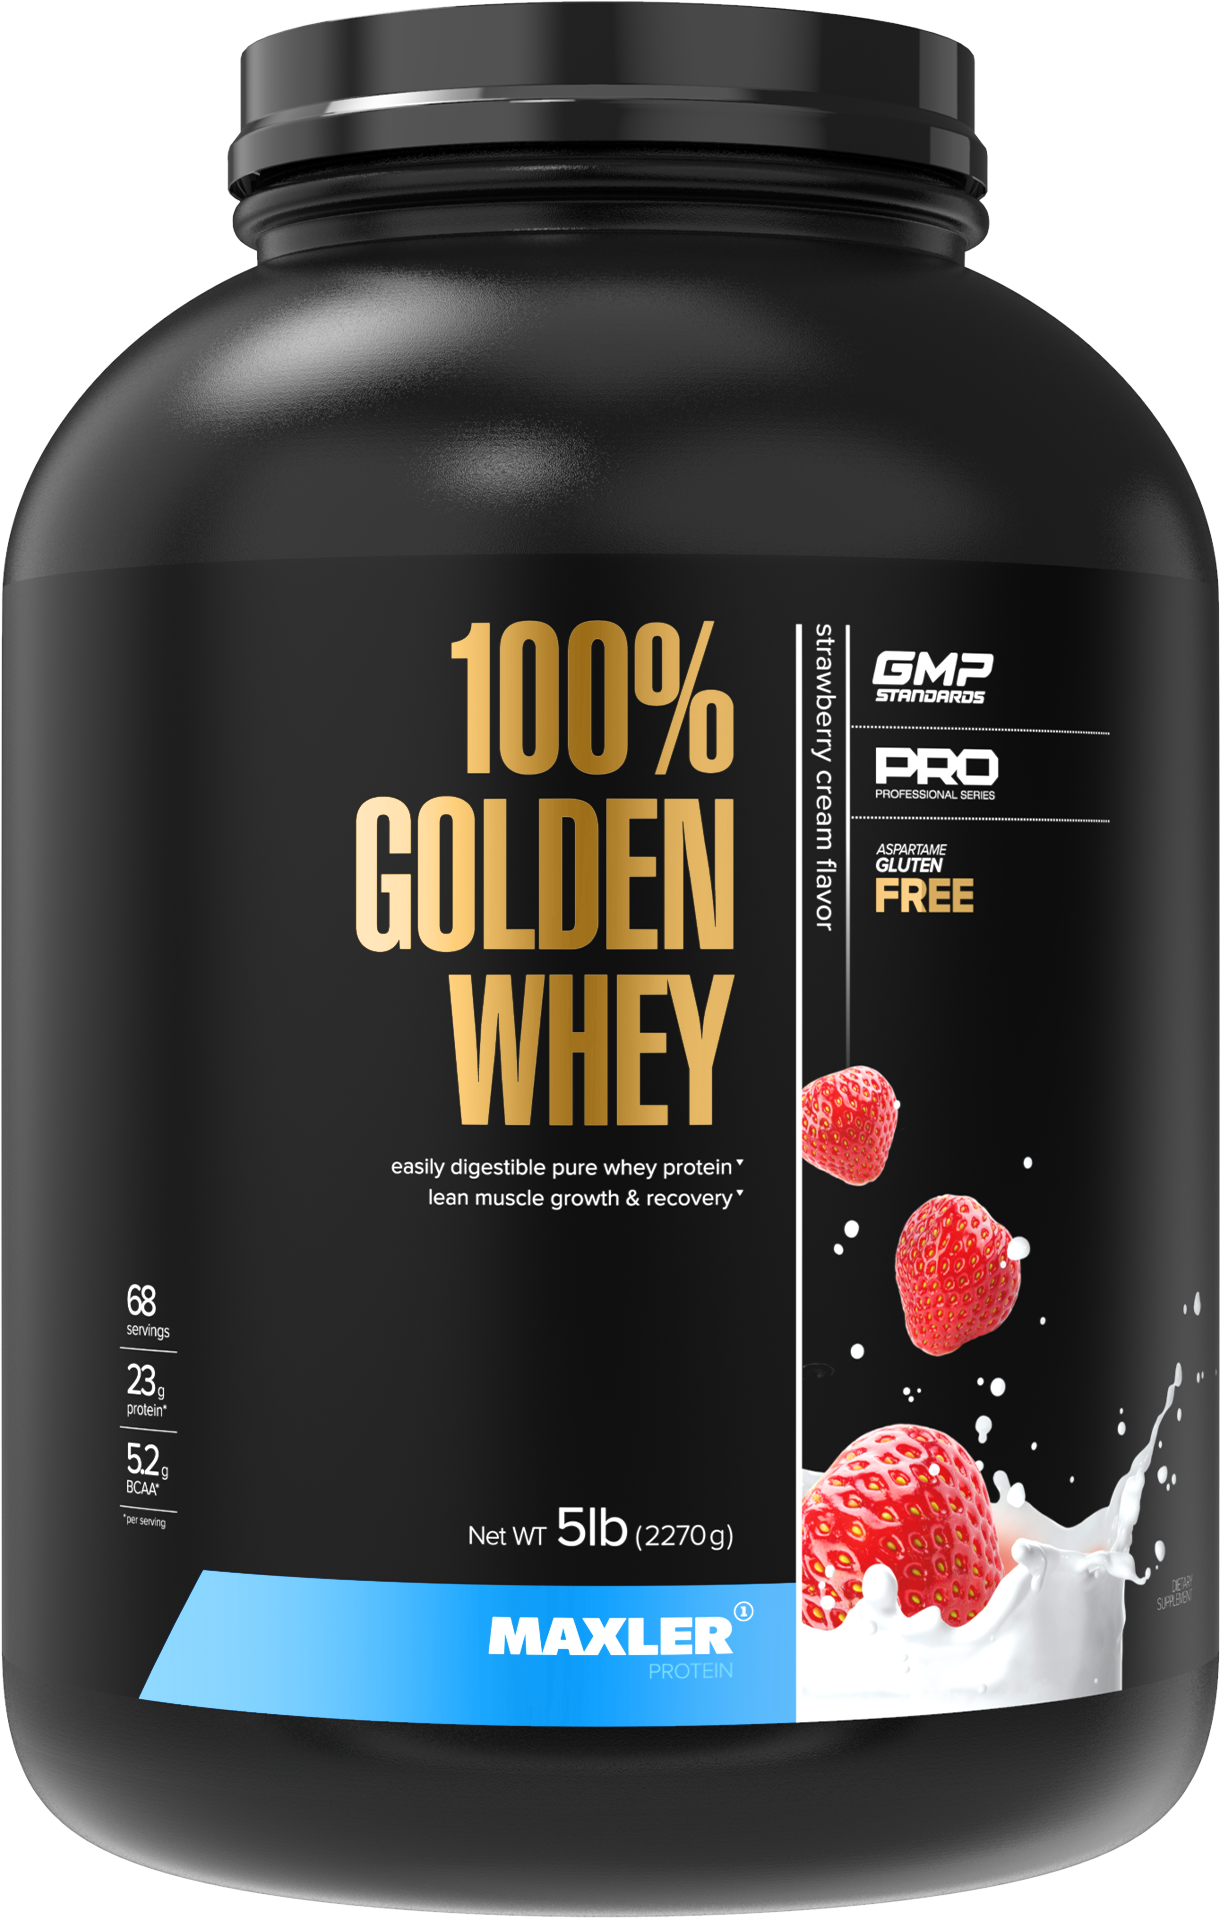 Сывороточный протеин Maxler 100% Golden Whey со вкусом клубничный крем, 2270г, Рост мышечной массы, Восстановление, BCAA